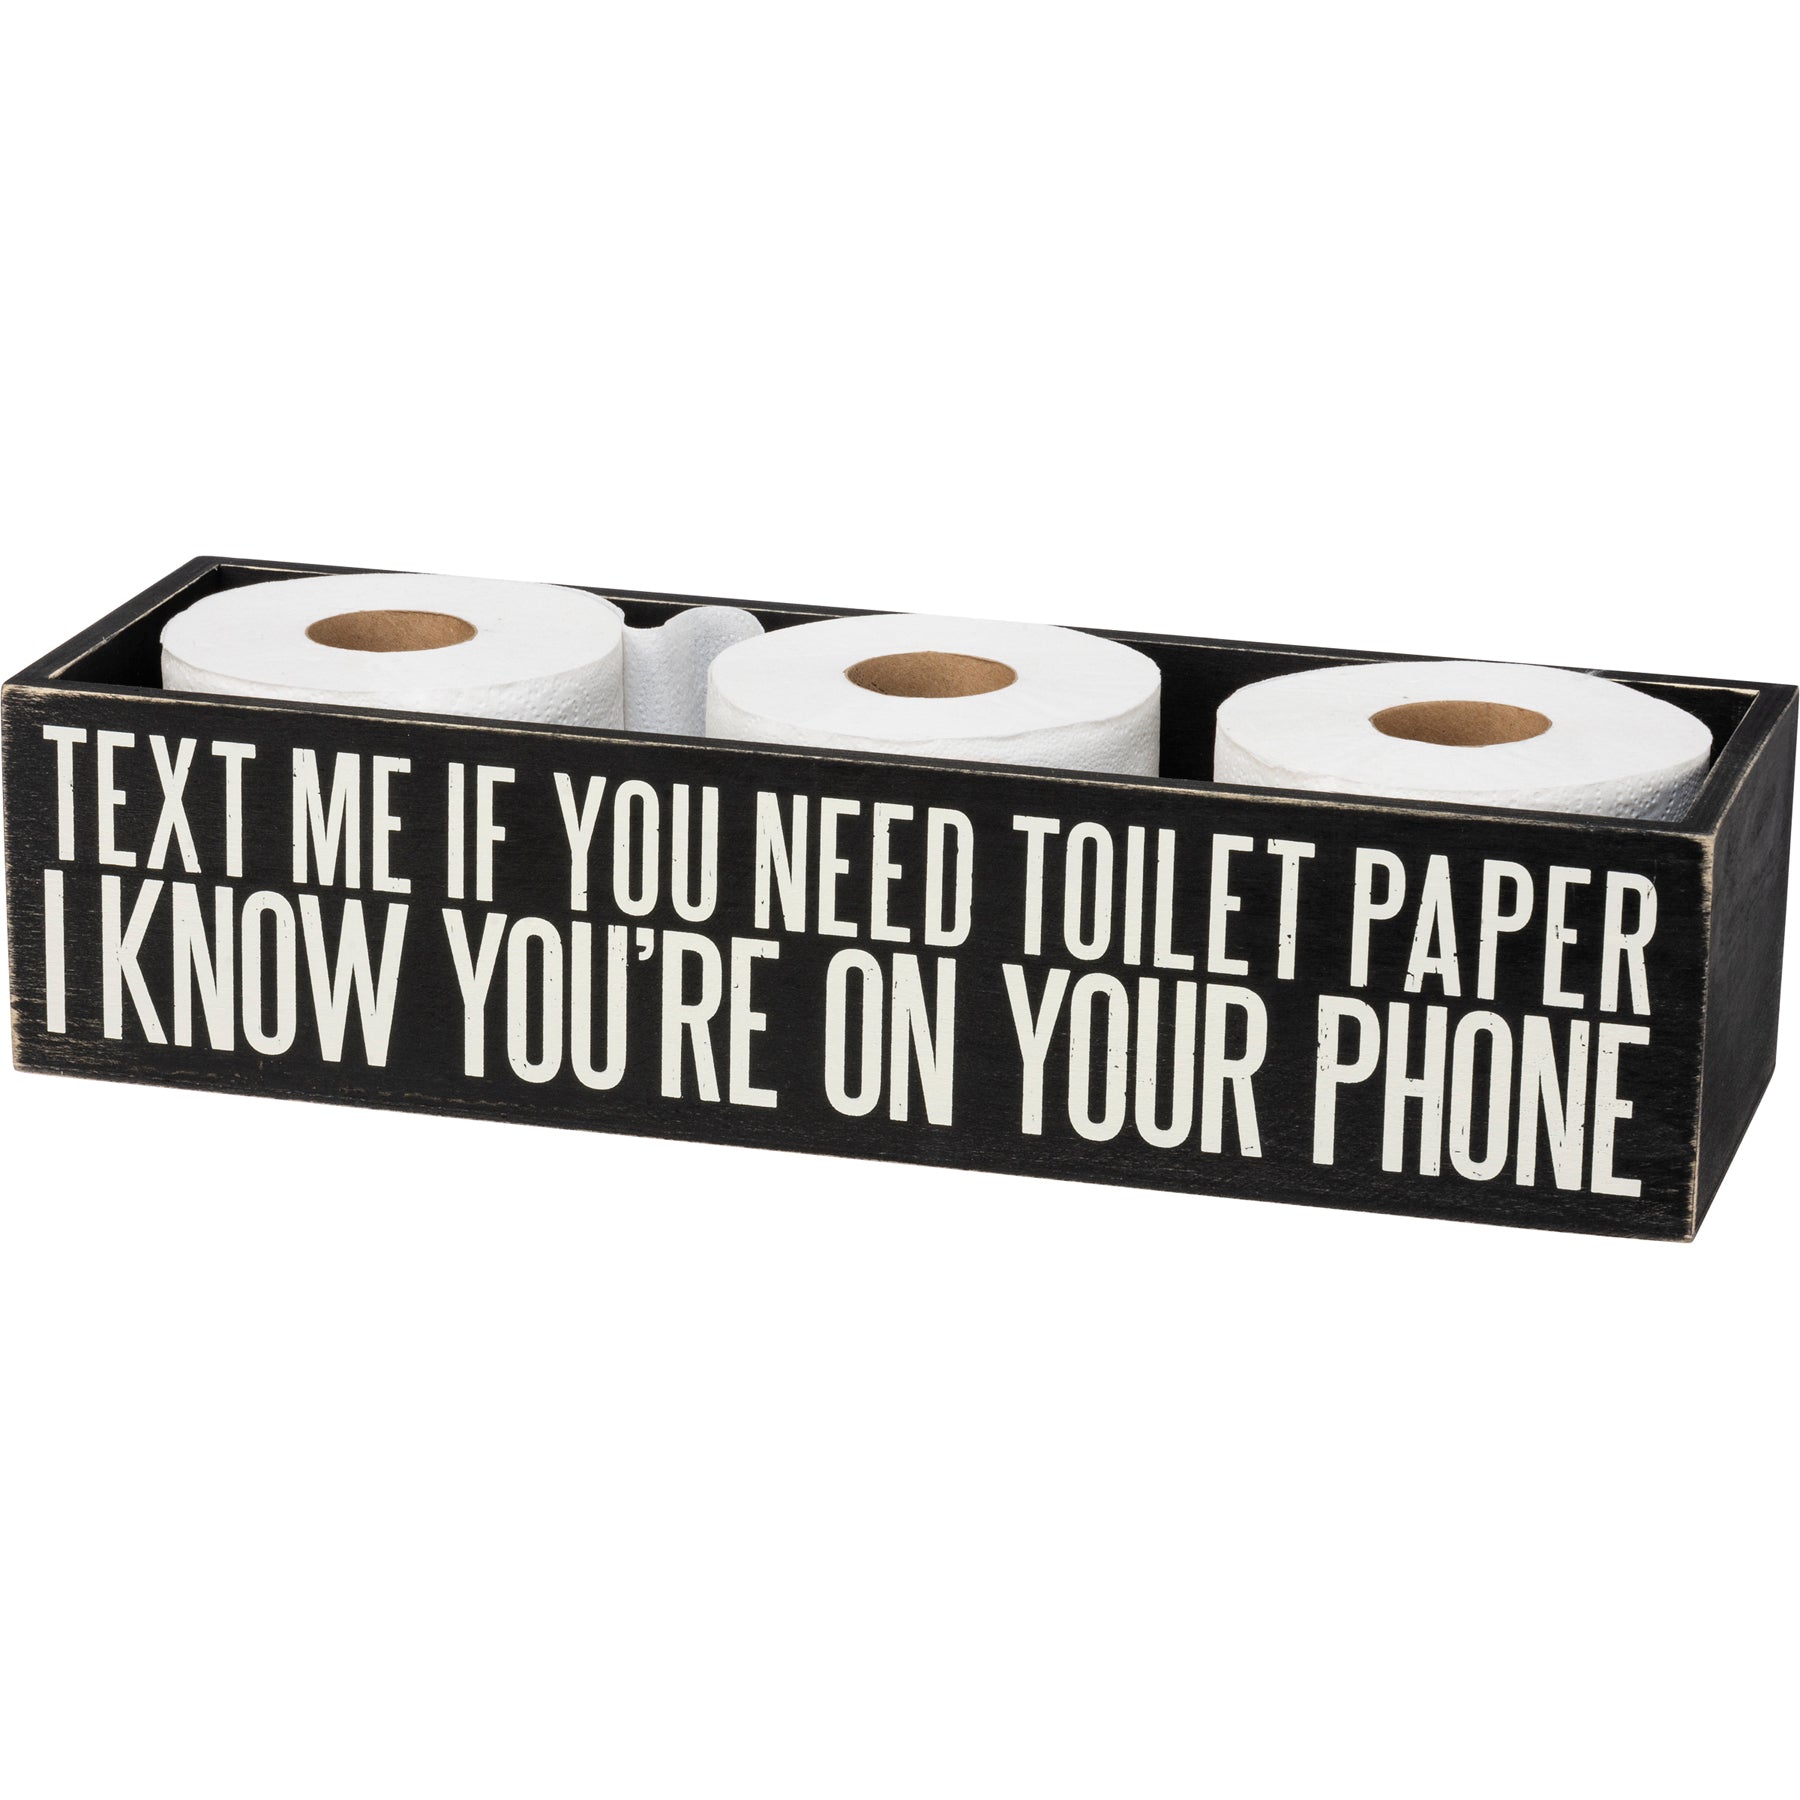 Wipe It Real Good - Toilet Paper Bin